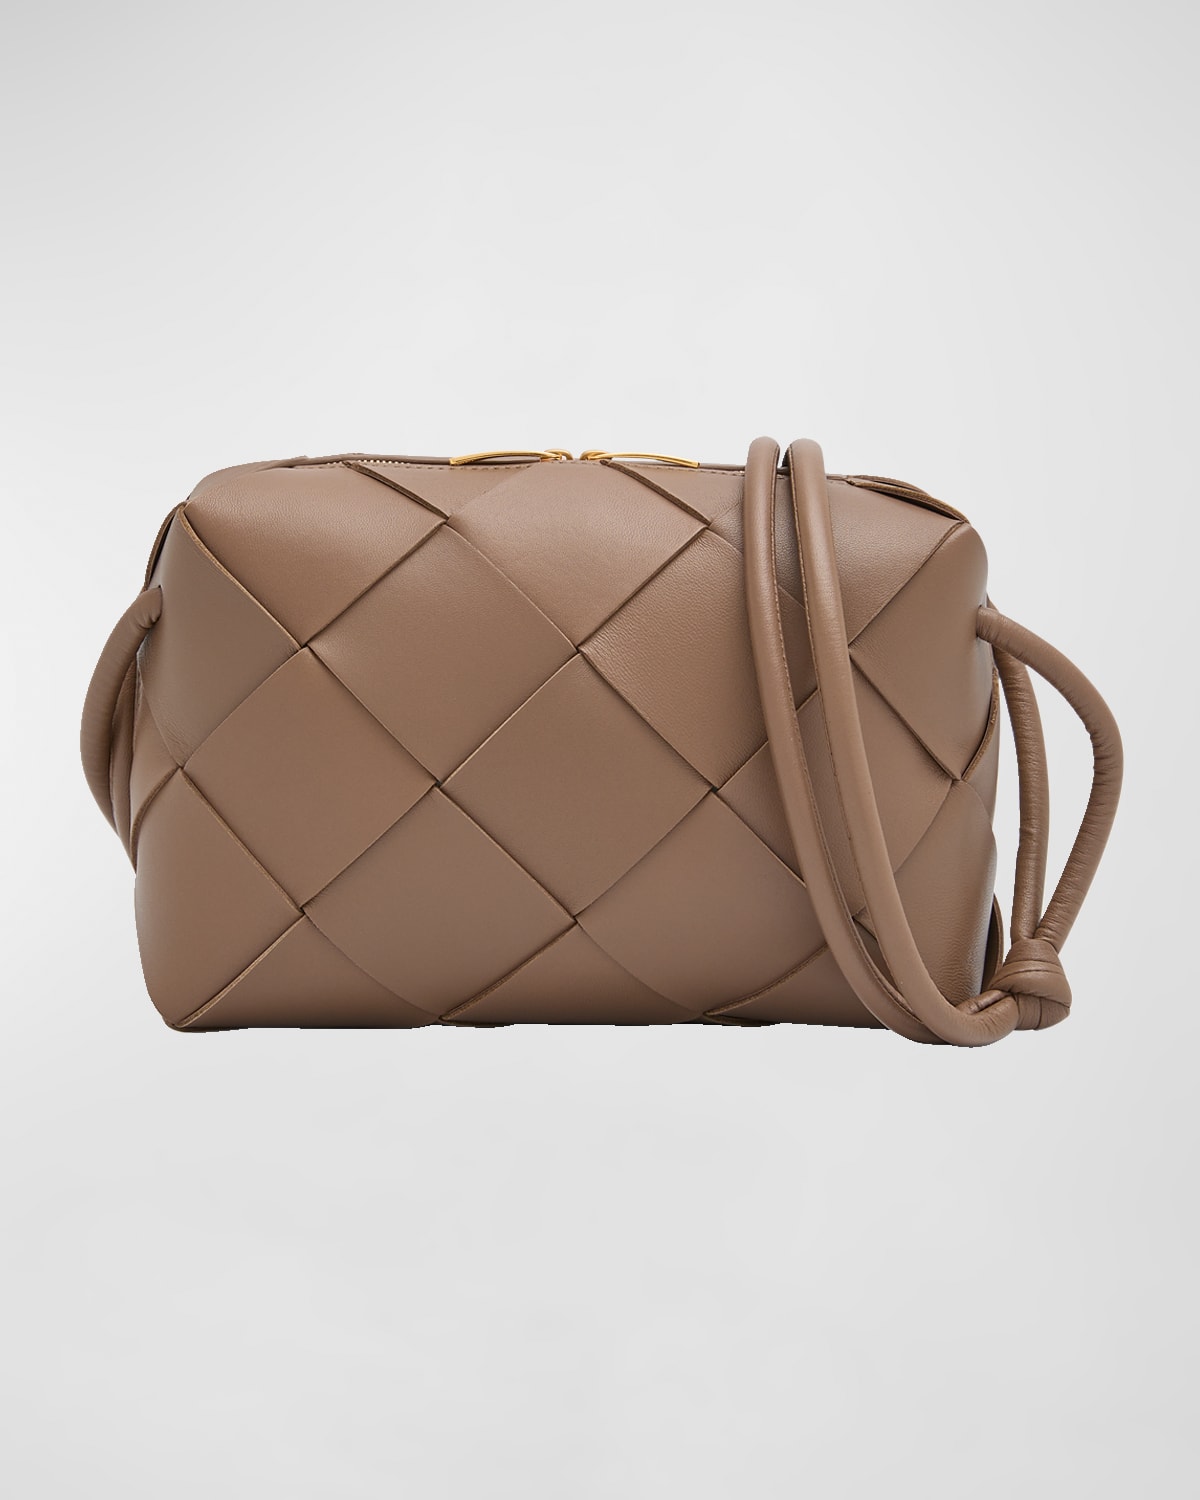 Bottega Veneta Intrecciato Leather Crossbody Bag In Taupe Gray/gold